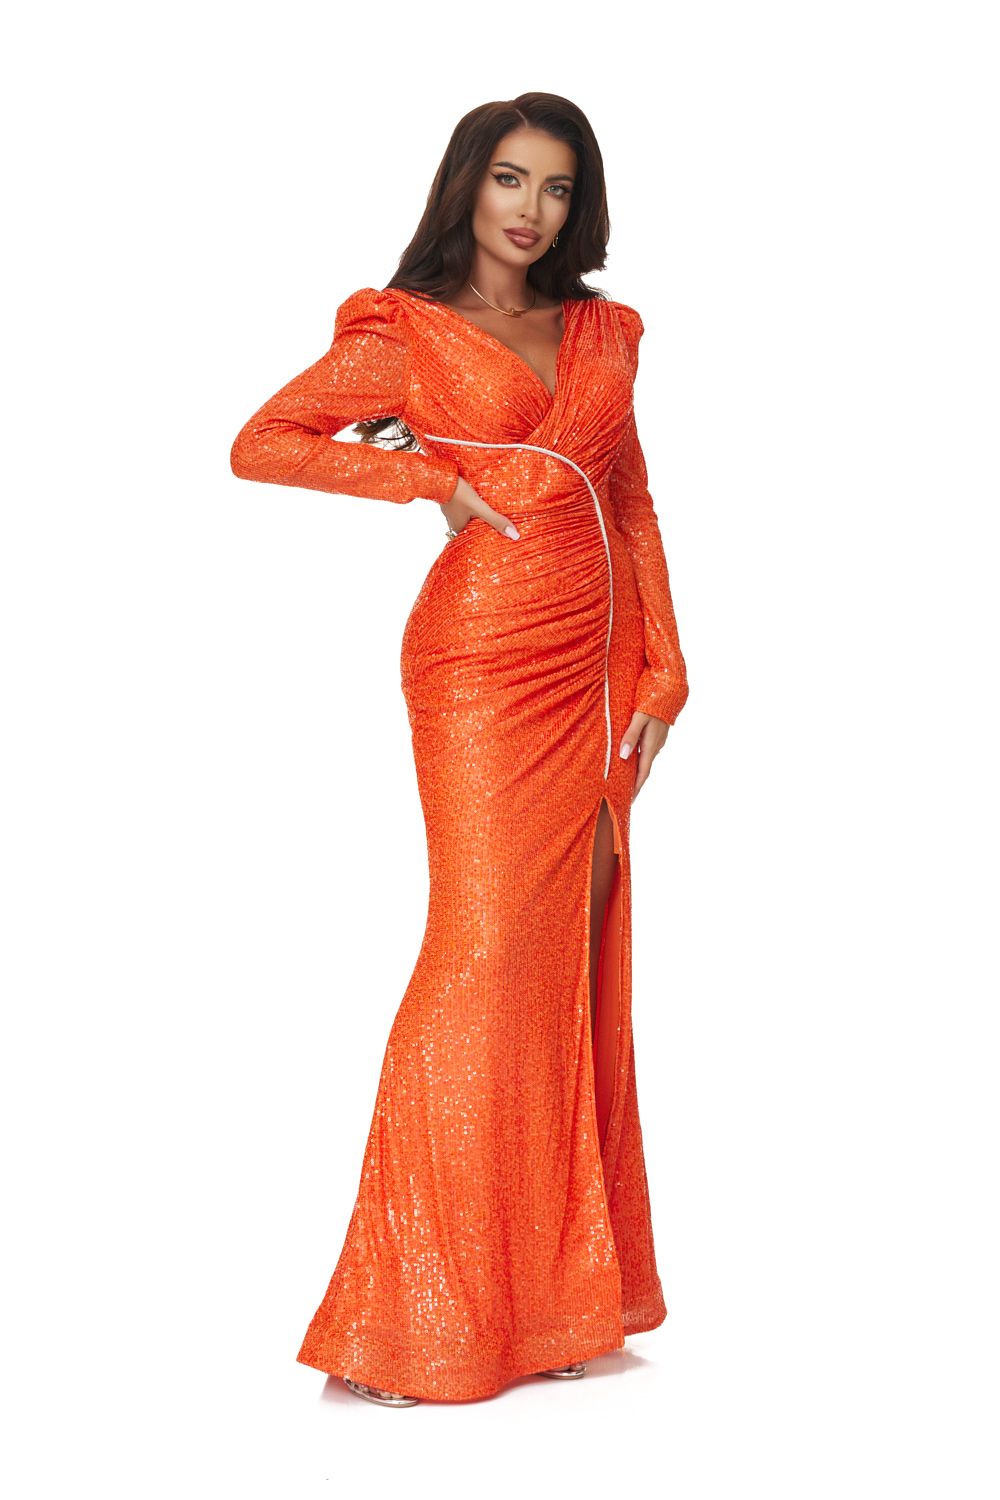 Olez Bogas hosszú narancssárga női ruha